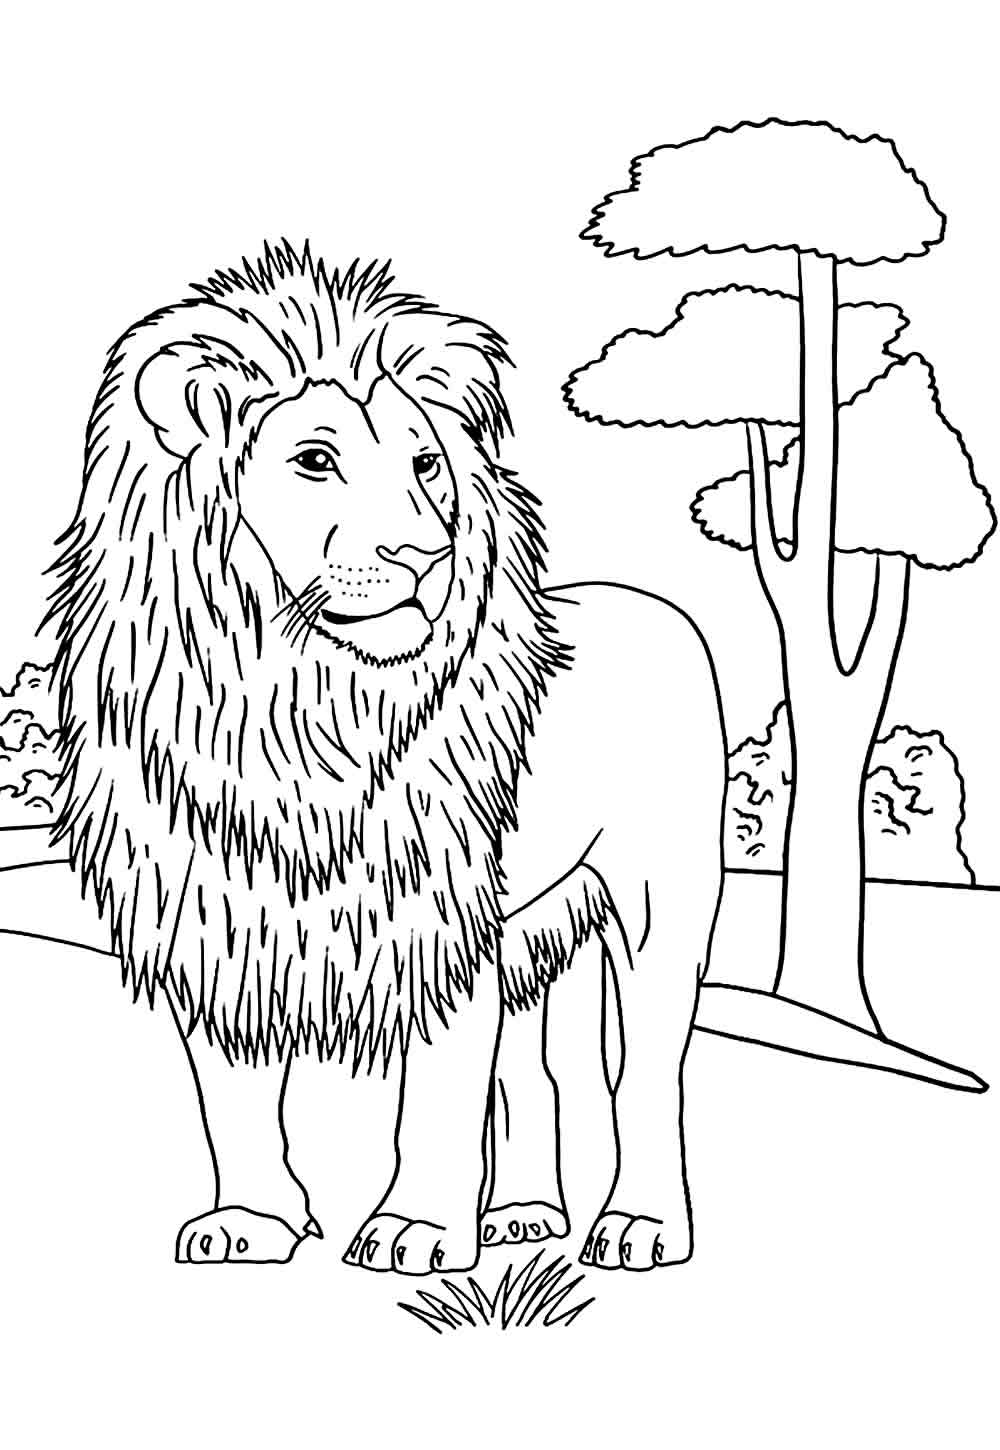 Desenho de Leão para imprimir